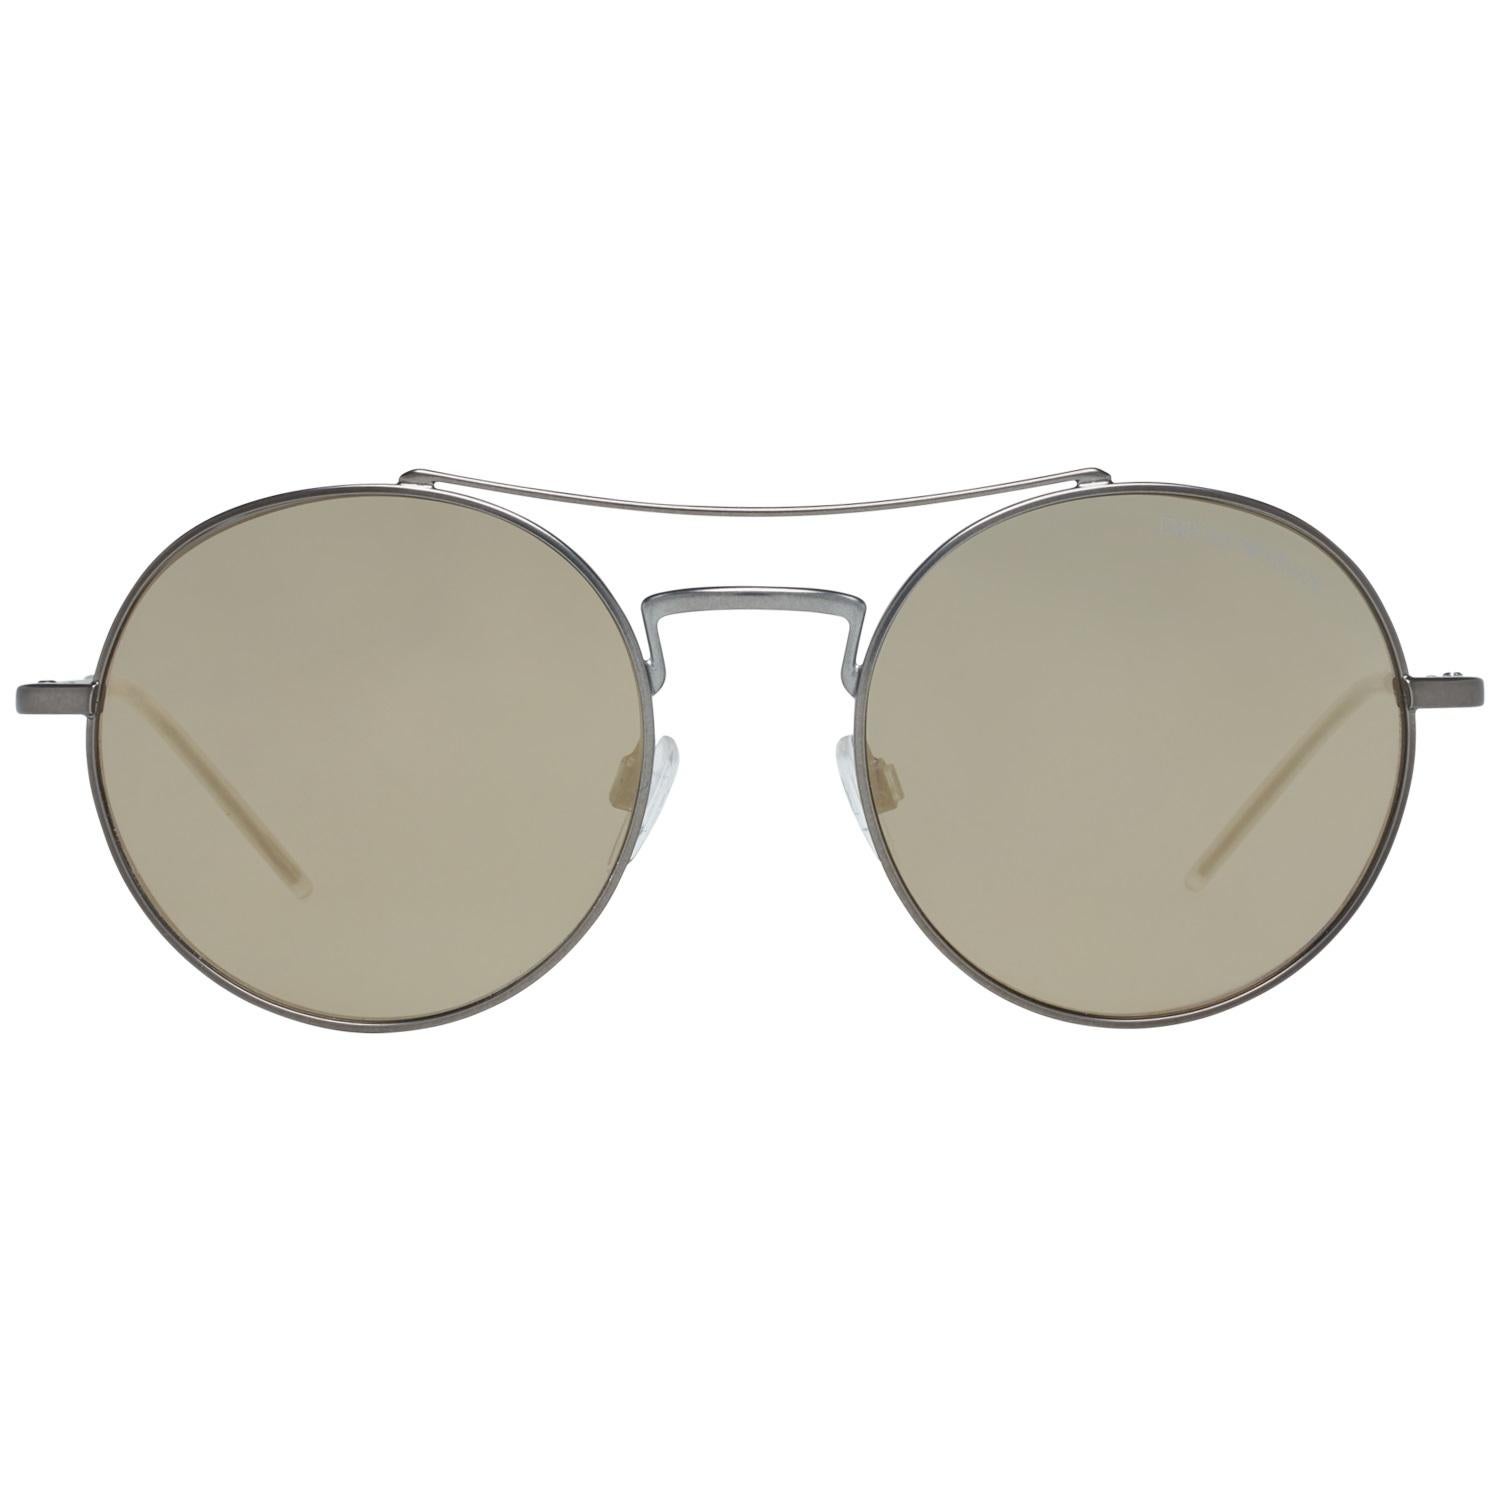 Emporio Armani Mint Unisex Silver Sunglasses EA2061 30035A52 52-19-139 mm 1